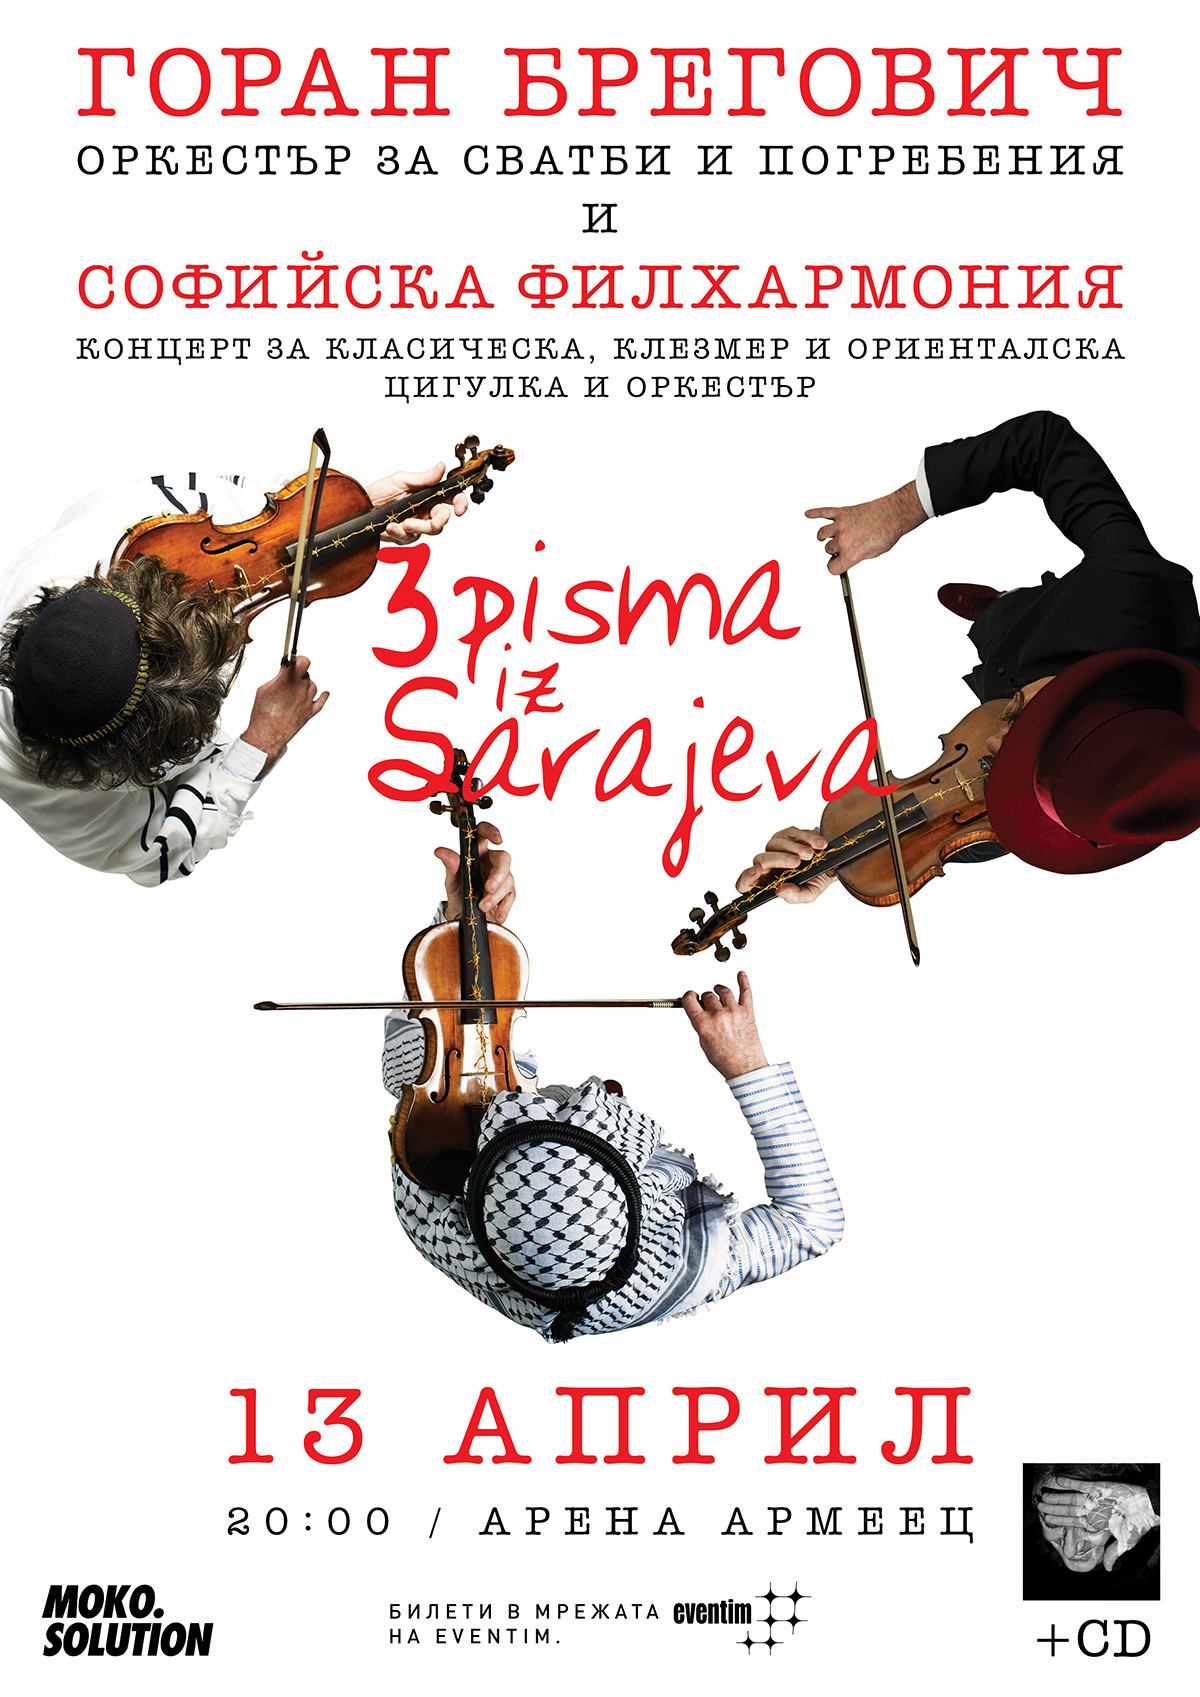 Выступление Горана Бреговича с «Свадебным и похоронным оркестром» и Симфоническим оркестром состоится в роковую пятницу - 13 апреля 2018 года в 20:00 на Армеек-Арене